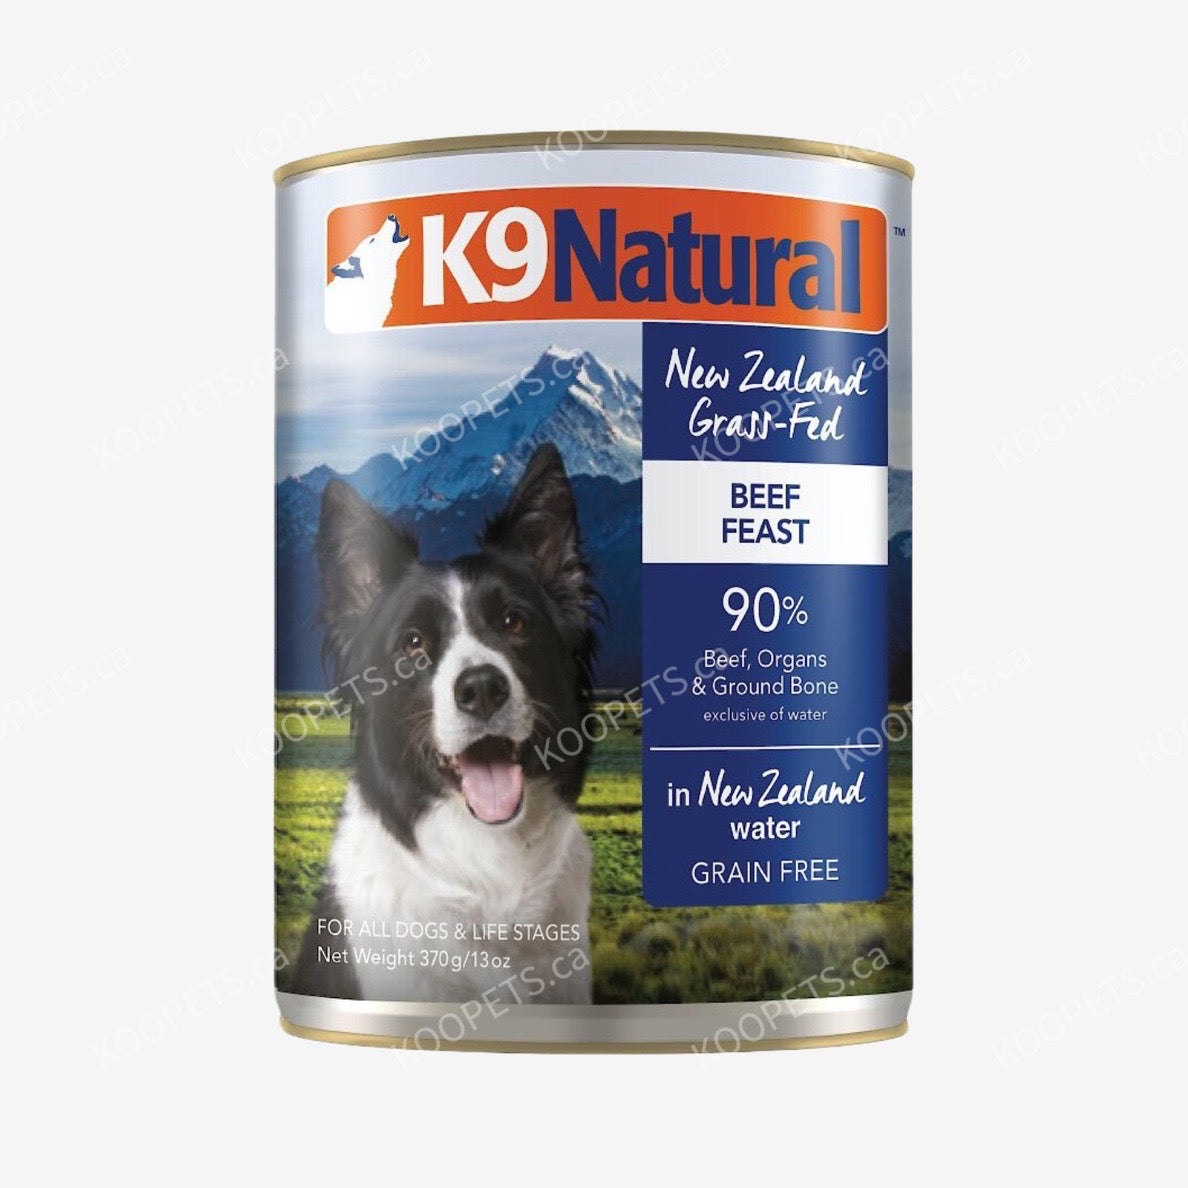 K9 Natural | 犬用 - 主食罐头 - 牛肉配方 (保质期至2023.12)